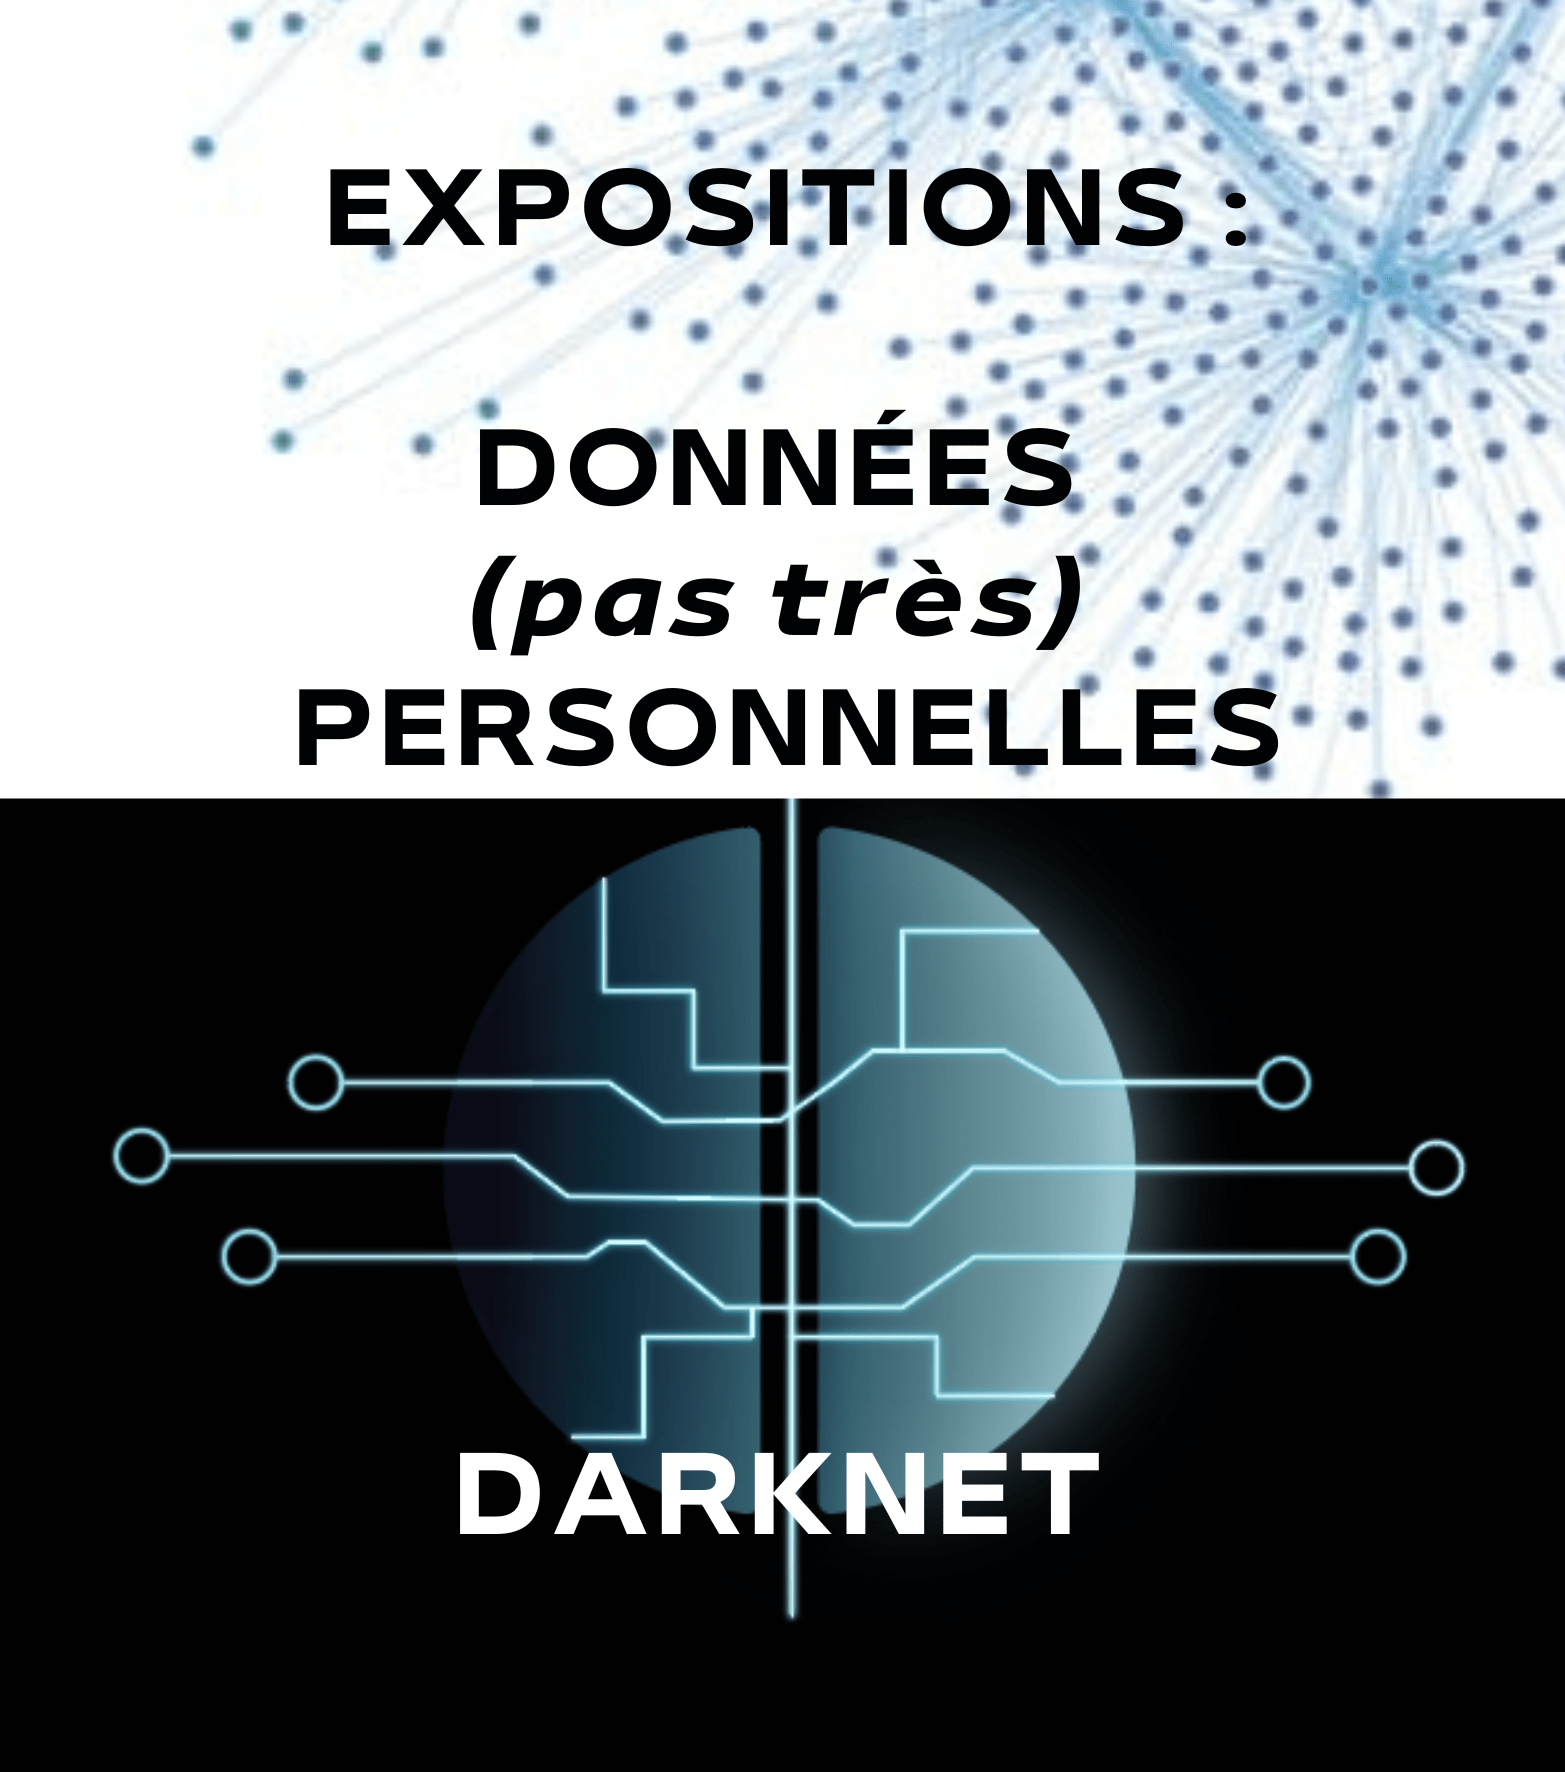 Expositions données personnelles +Darknet